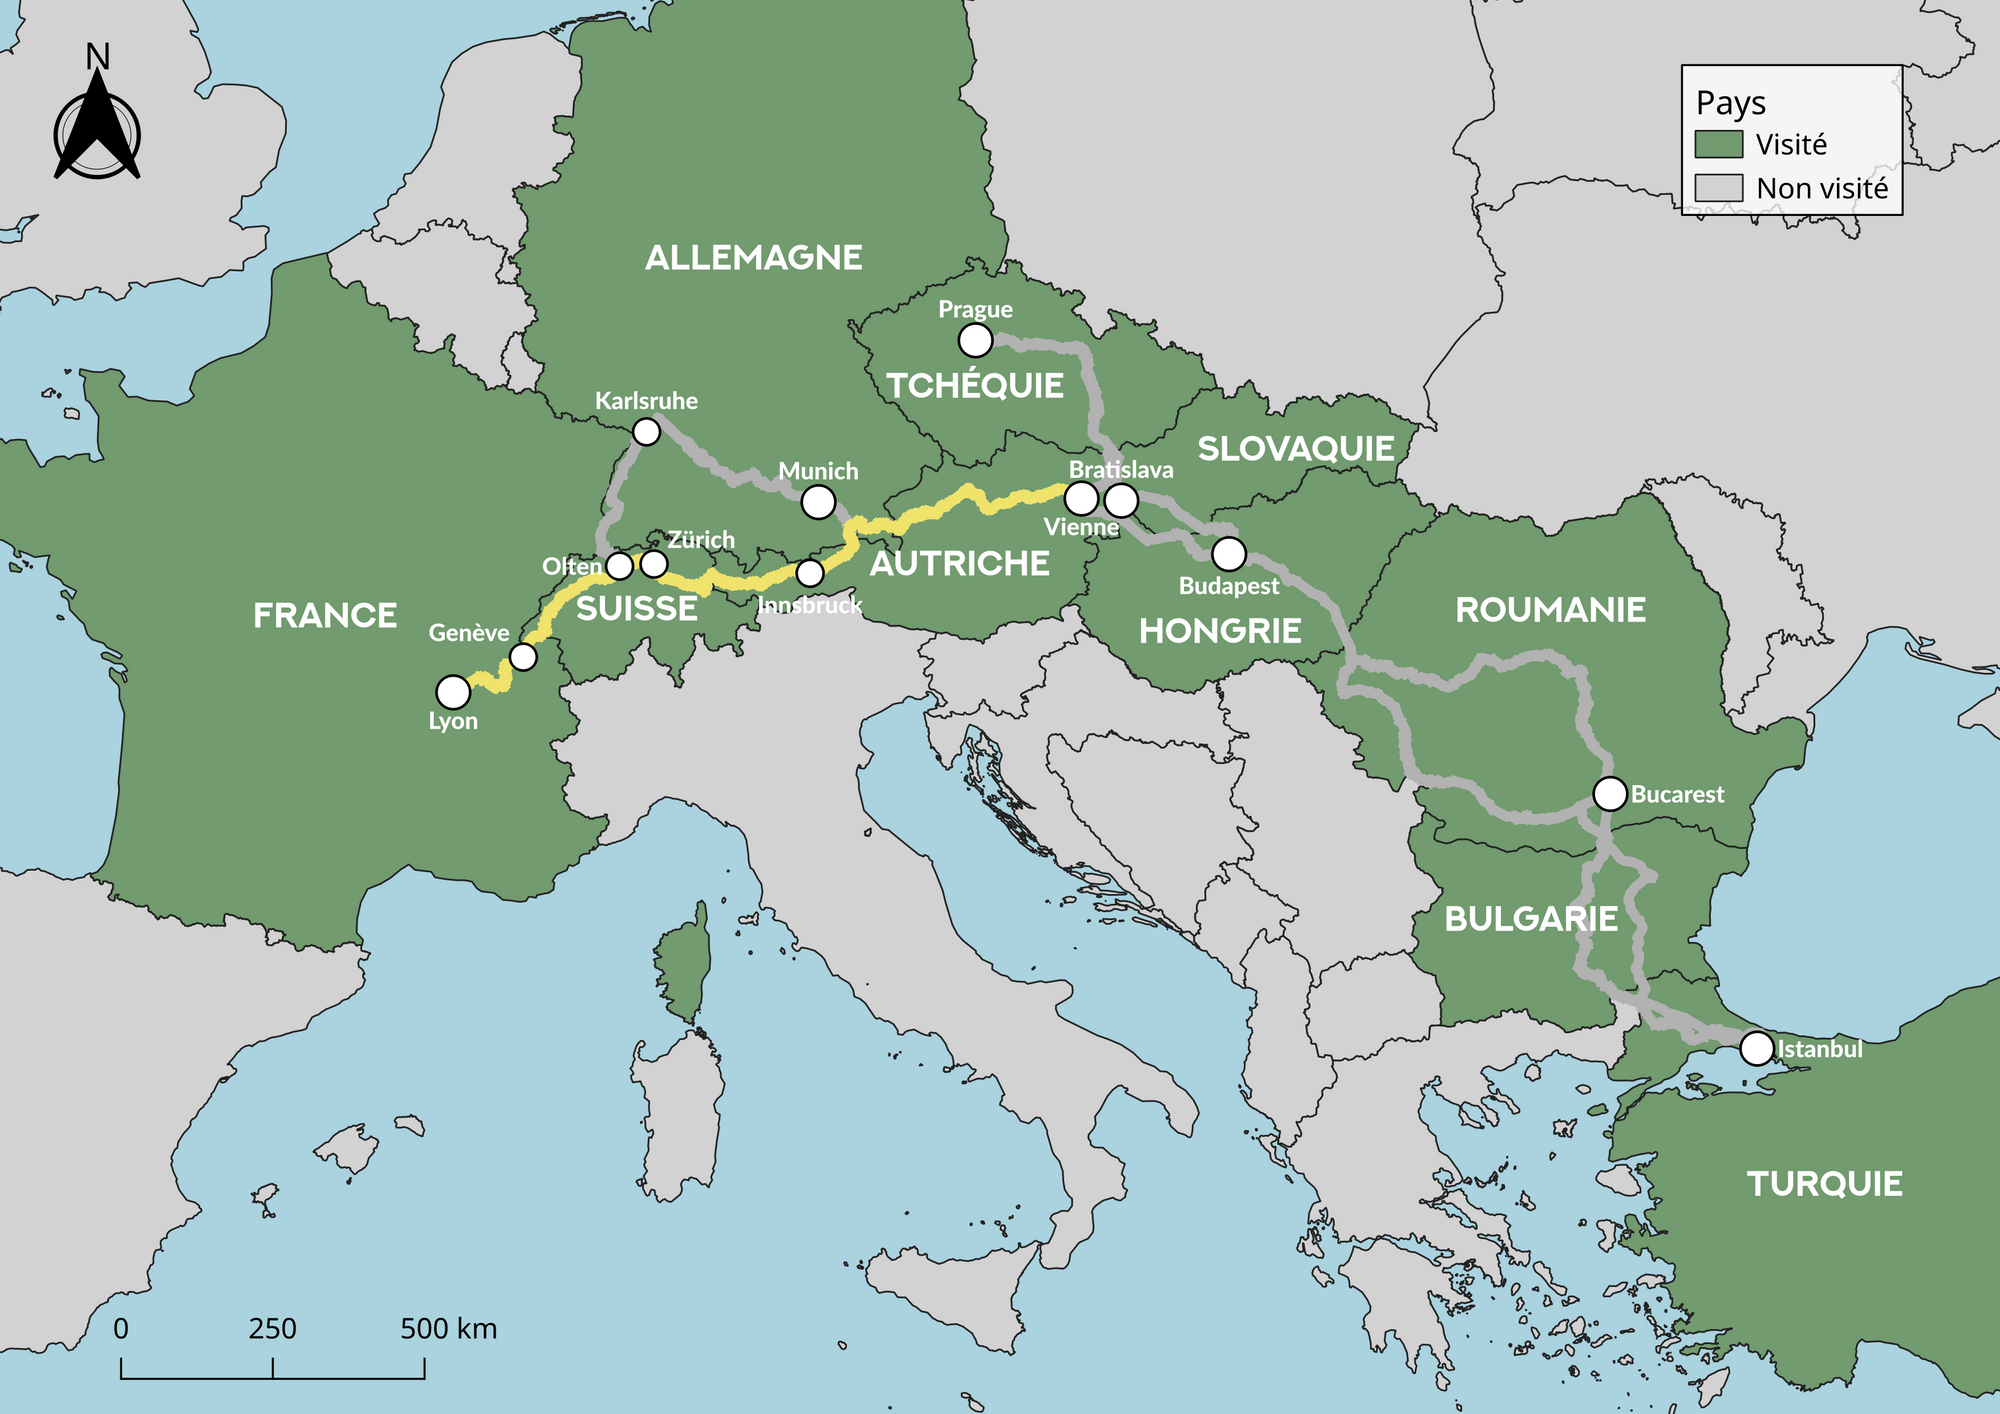 Carte de l'Europe indiquant le trajet en train : Vienne - Innsbruck - Zurich - Genève - Lyon